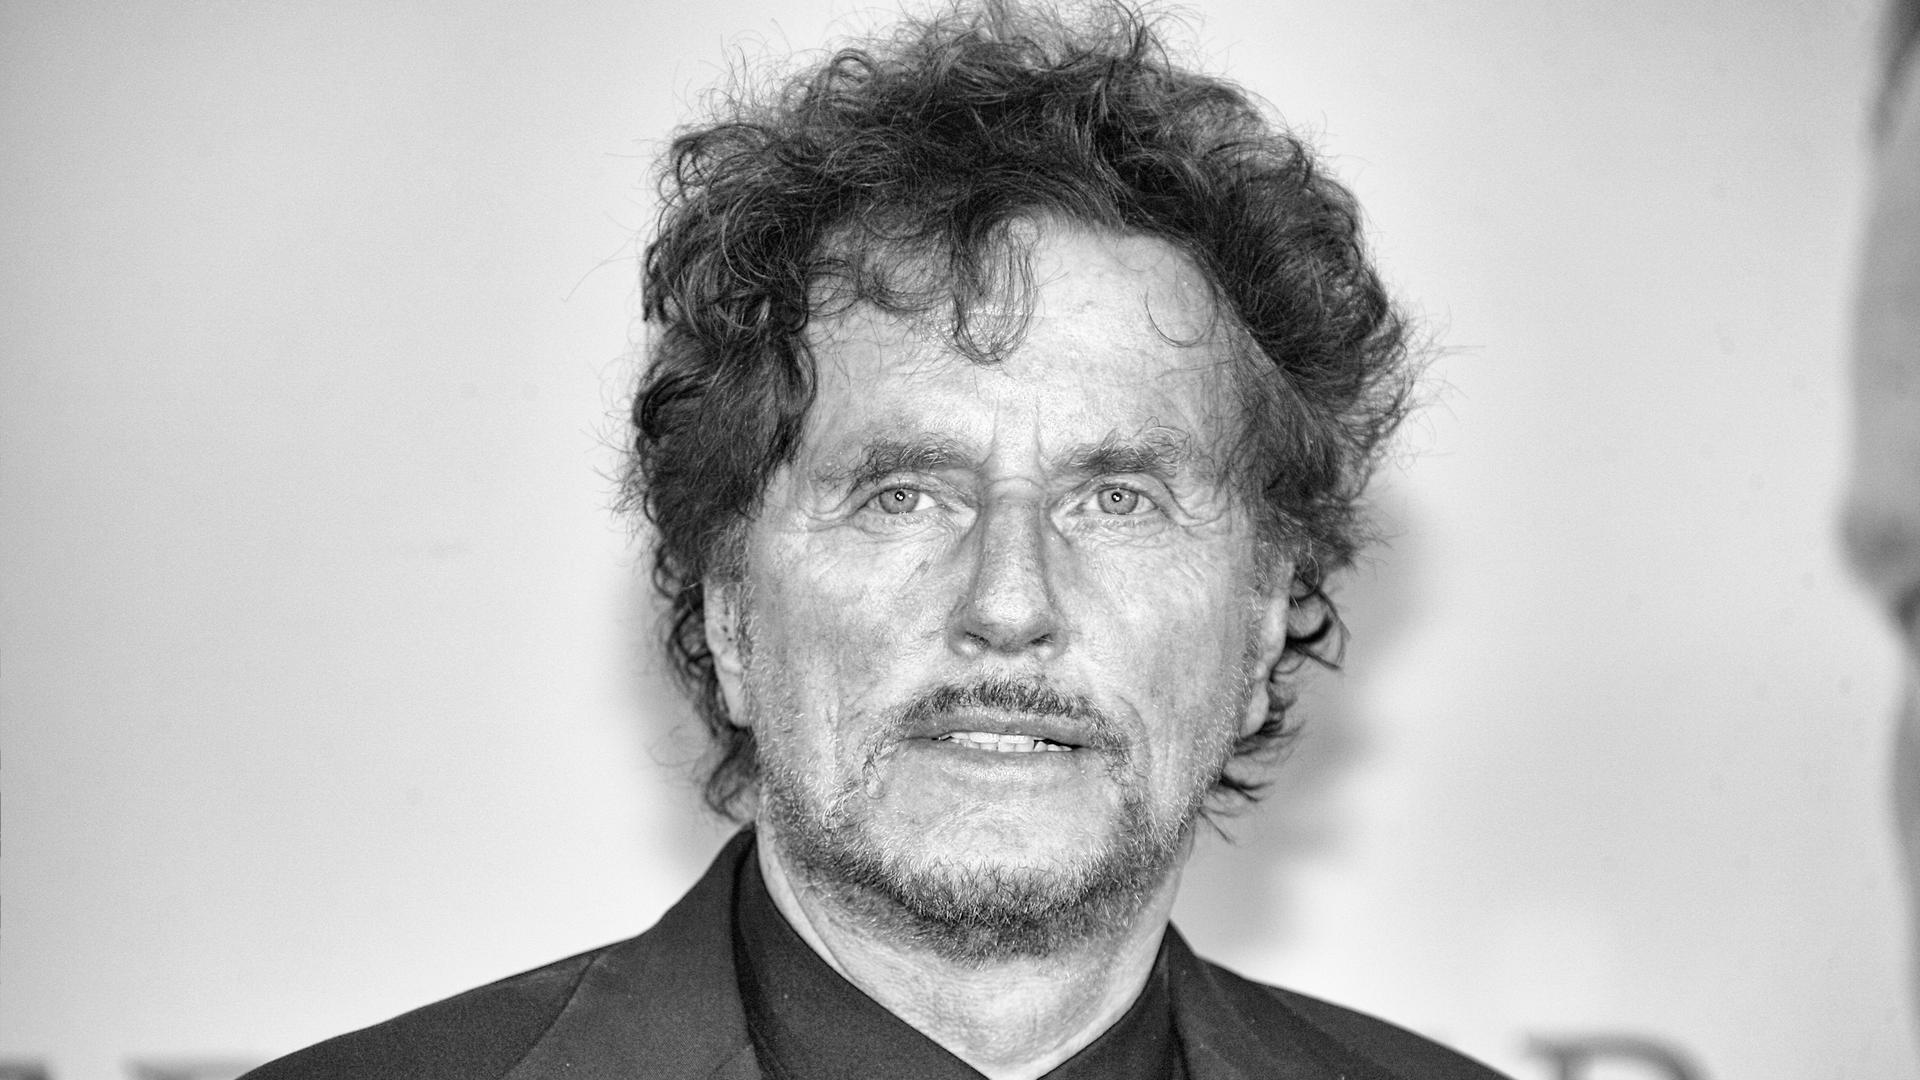 Schwarz-weiß Porträt des Regisseurs Dieter Wedel.